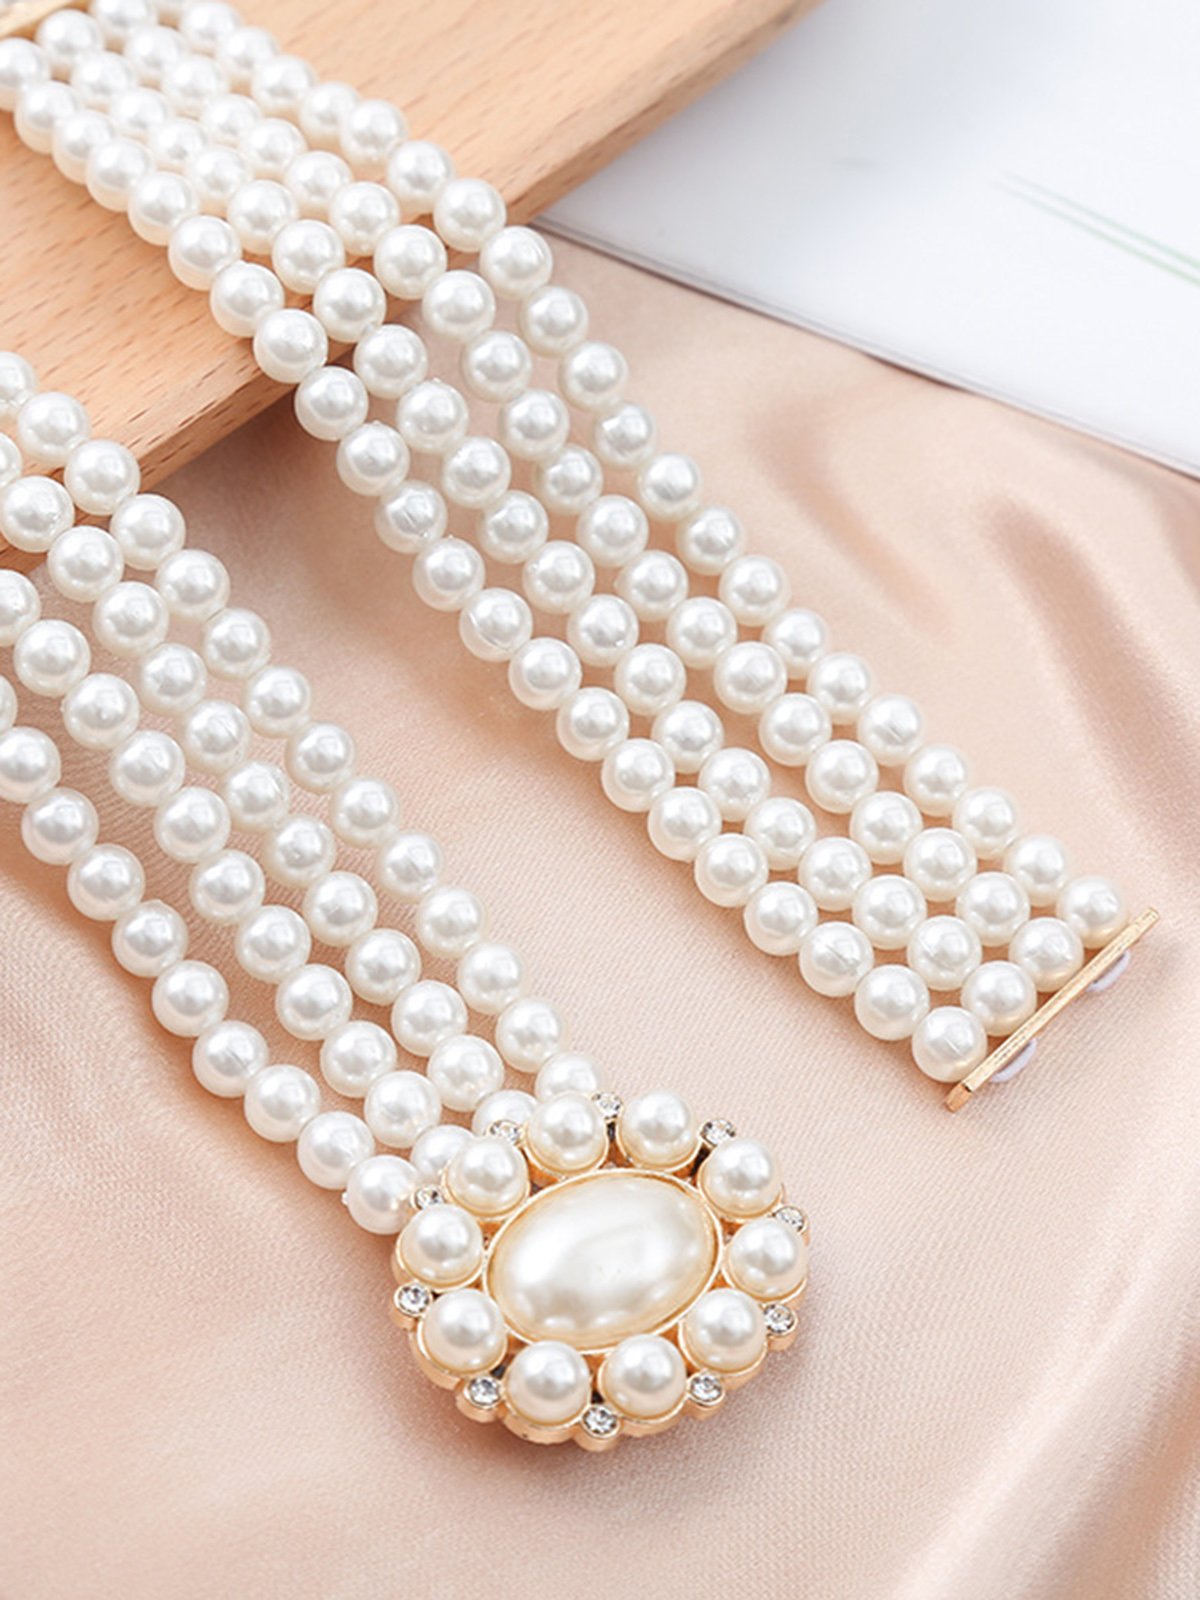 Elegant Strass Blume Nachgemachte Perle Elastisch Bund Kleid Zubehörteil